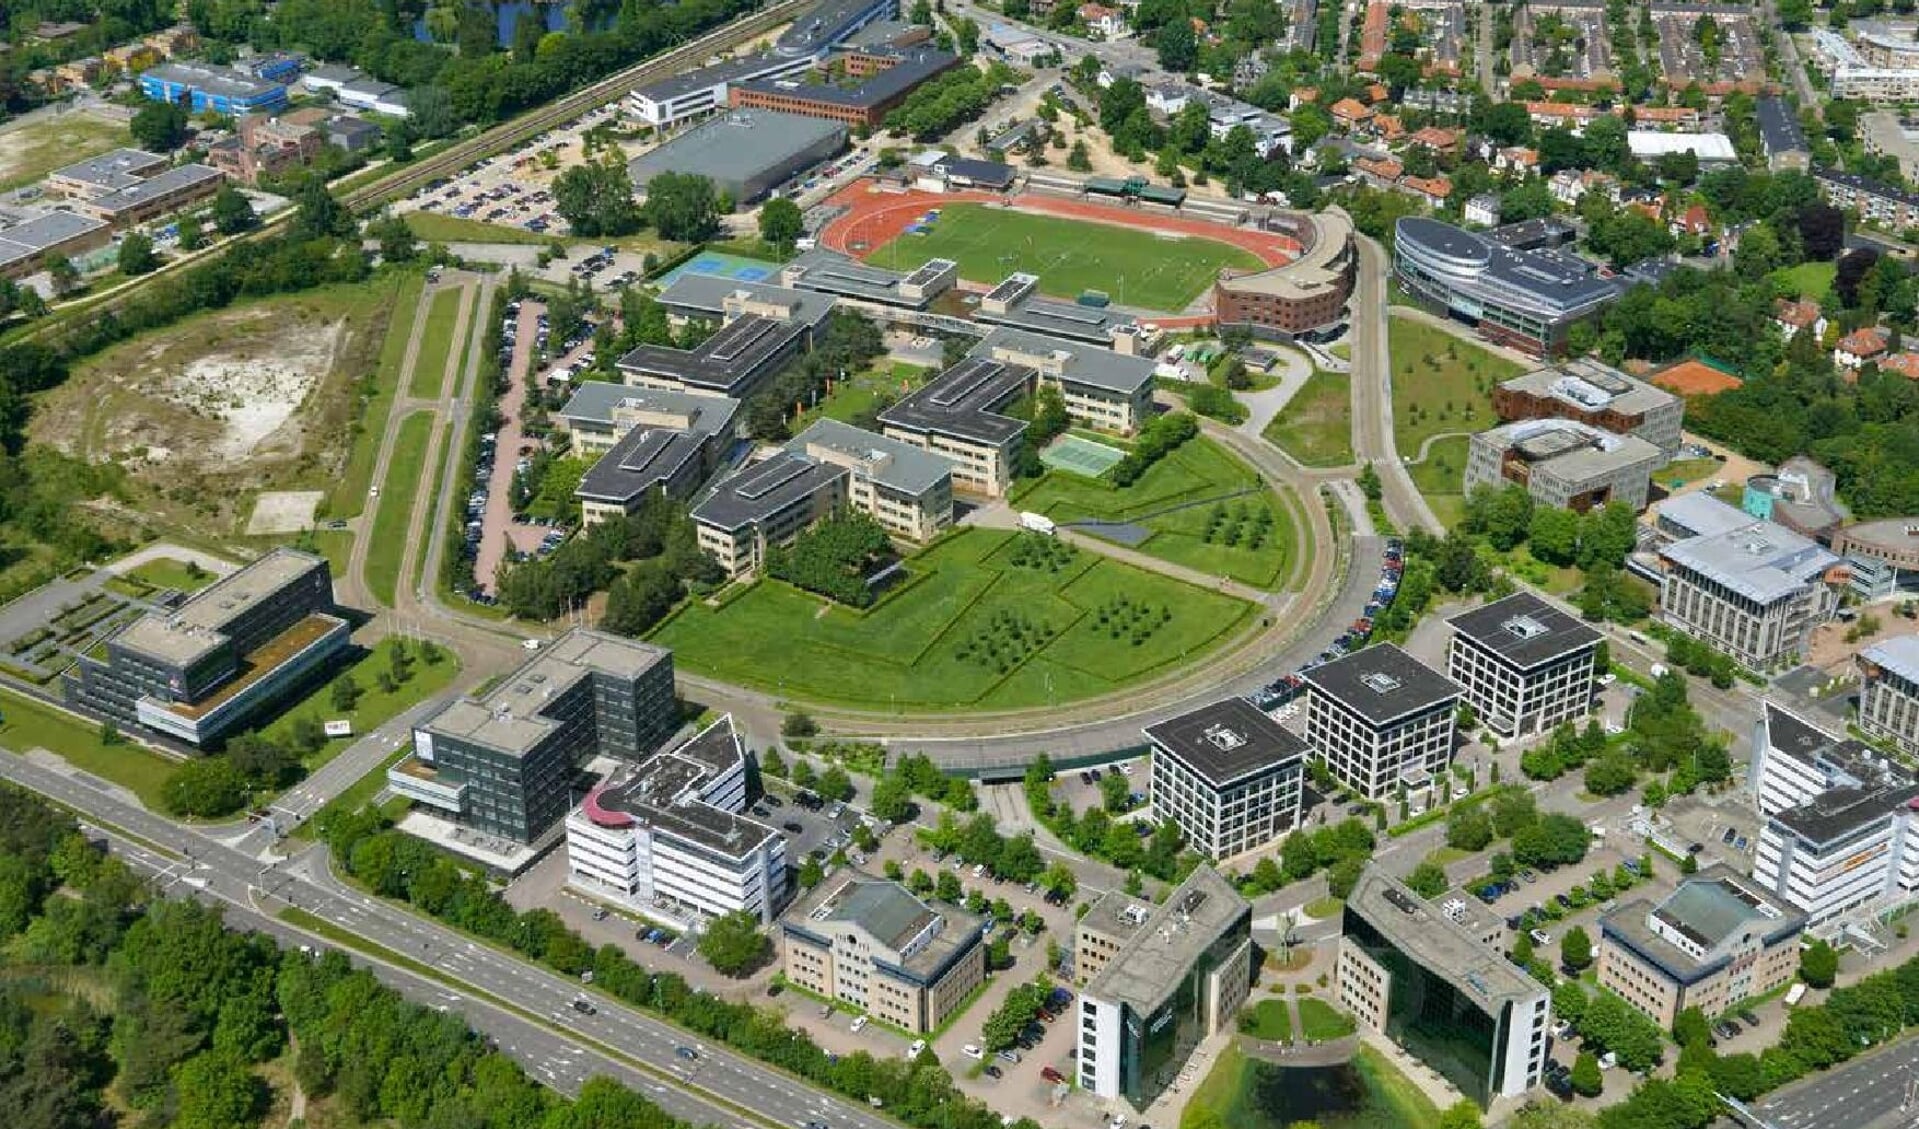 Het Arenapark - van bovenaf gezien - is een locatie waar straks ruimte is voor werken en wonen.